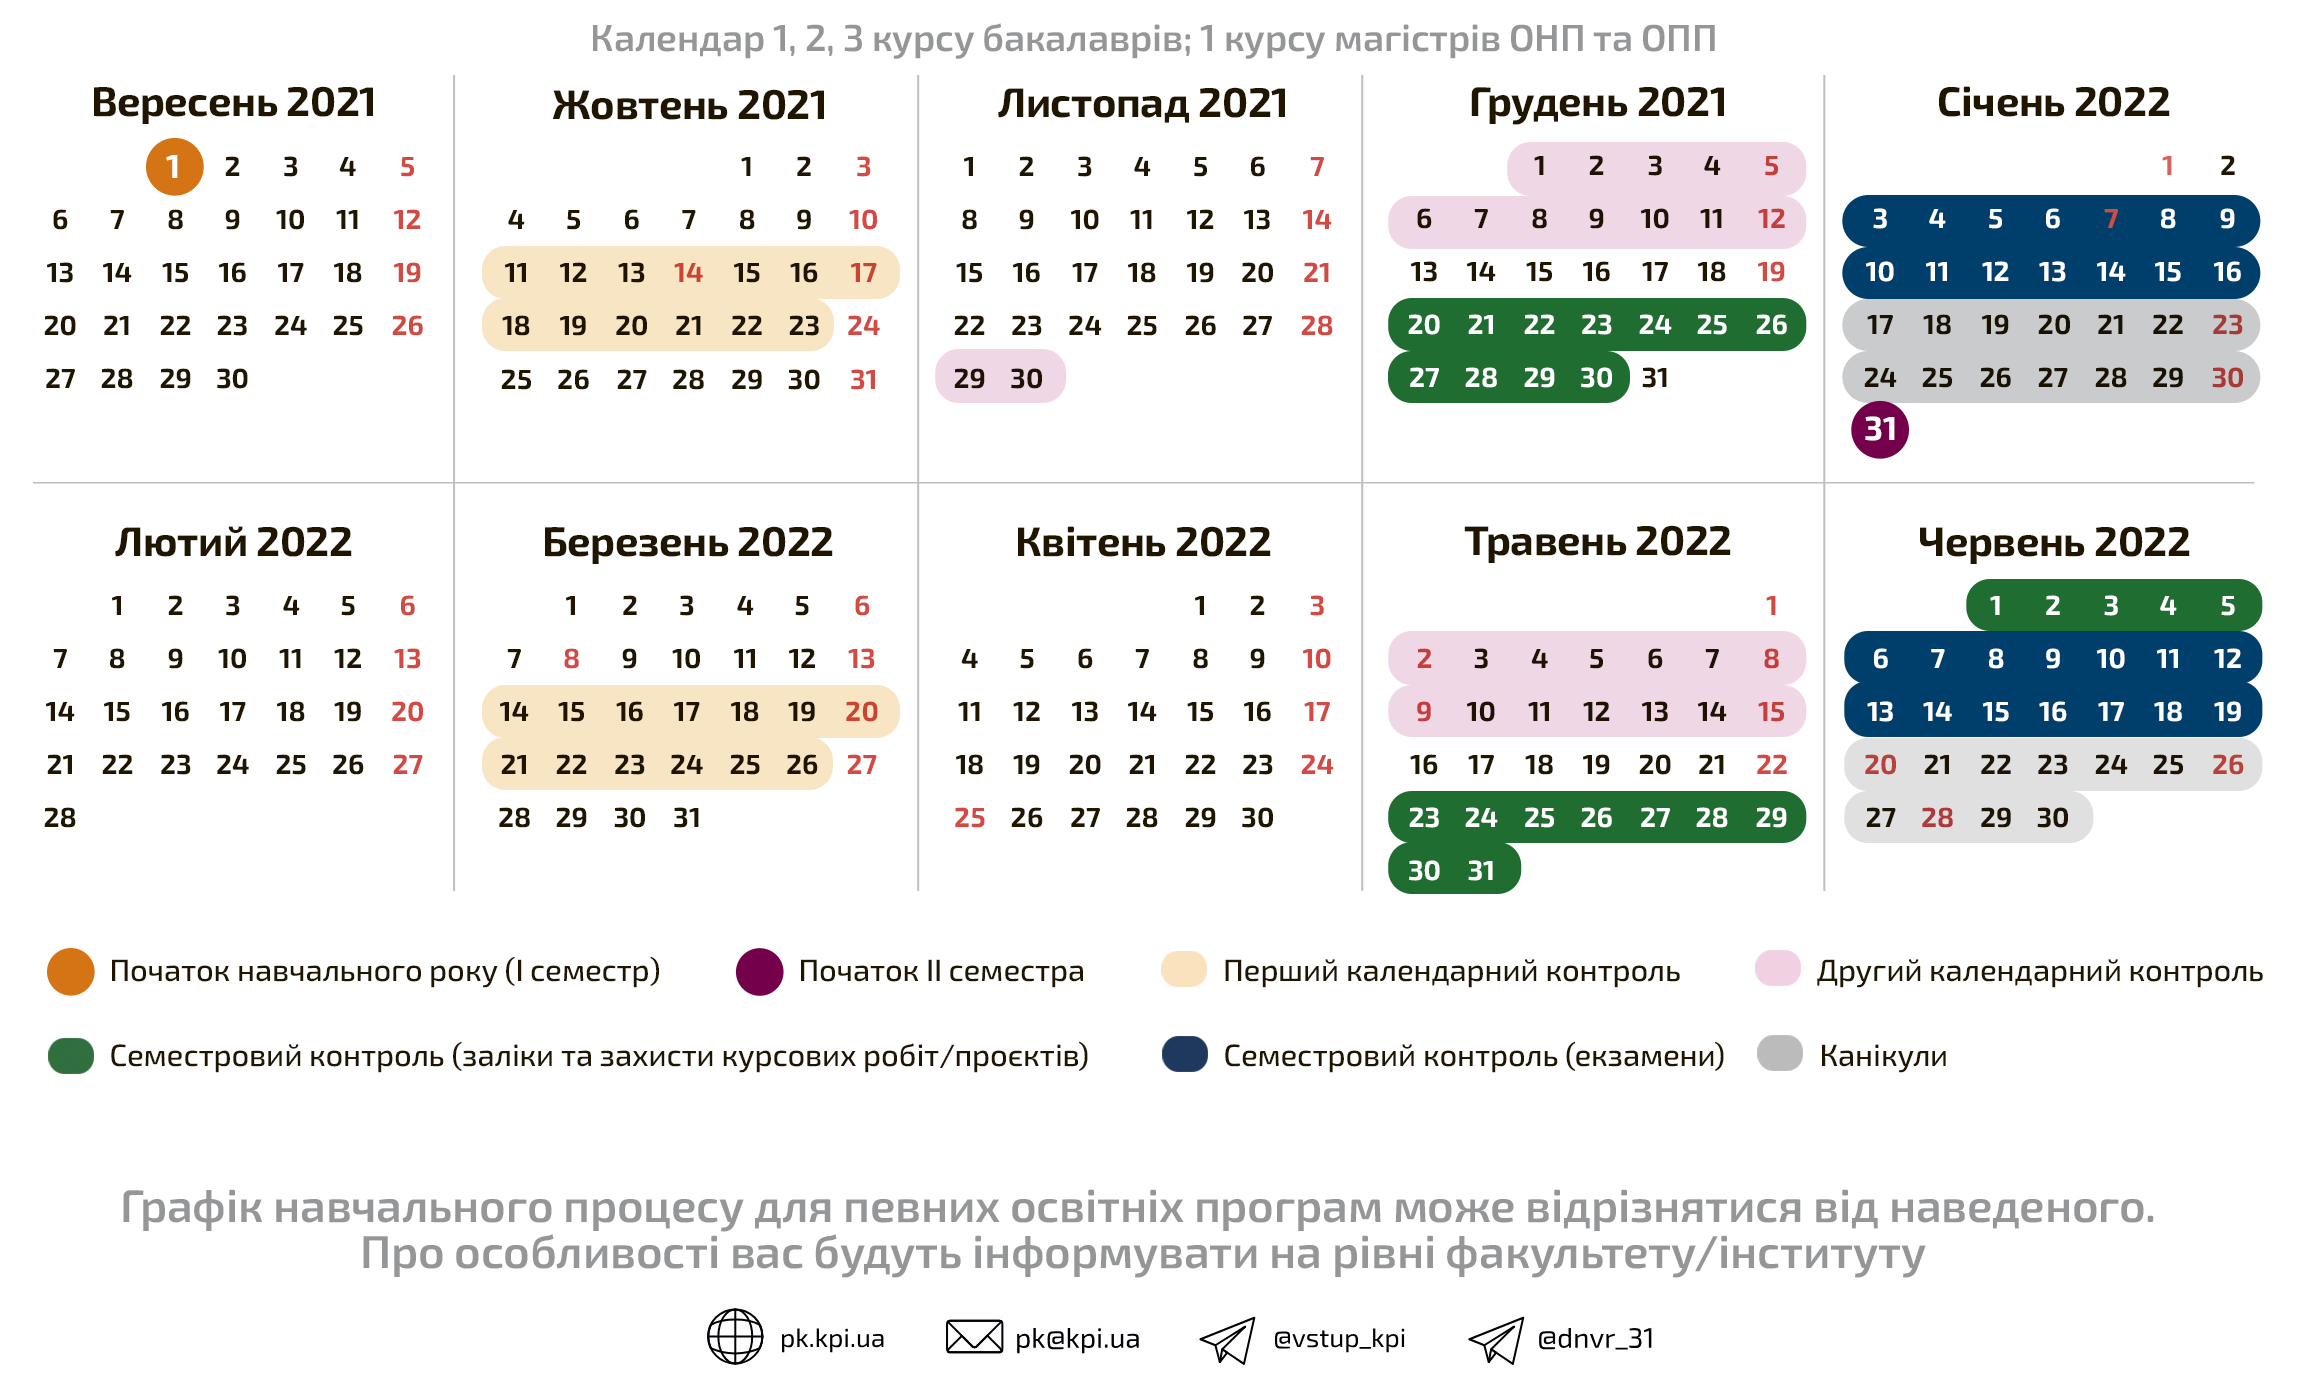 Schedule_e_p_2021